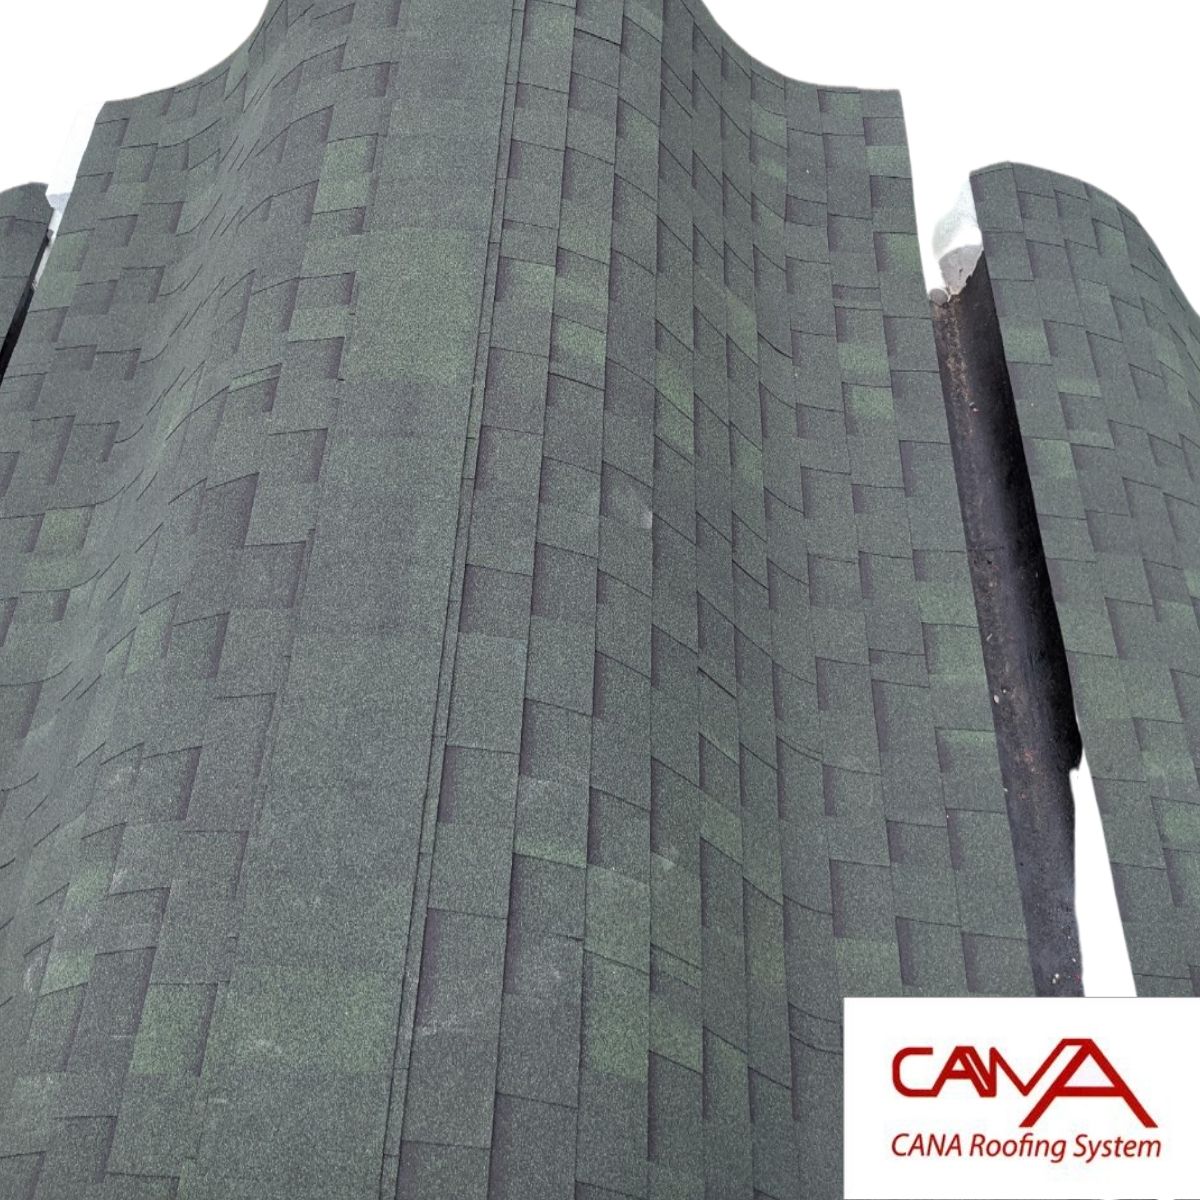 Tấm lợp bitum phủ đá CANA Hàn Quốc đa tầng dark green - tấm dán mái nhựa đường phủ đá màu xanh lá nhẹ cho mái bê tông, biệt thự, nhà phố, nhà tiền chế, nhà gỗ, đóng gói 2.54m2 phủ mái /gói 